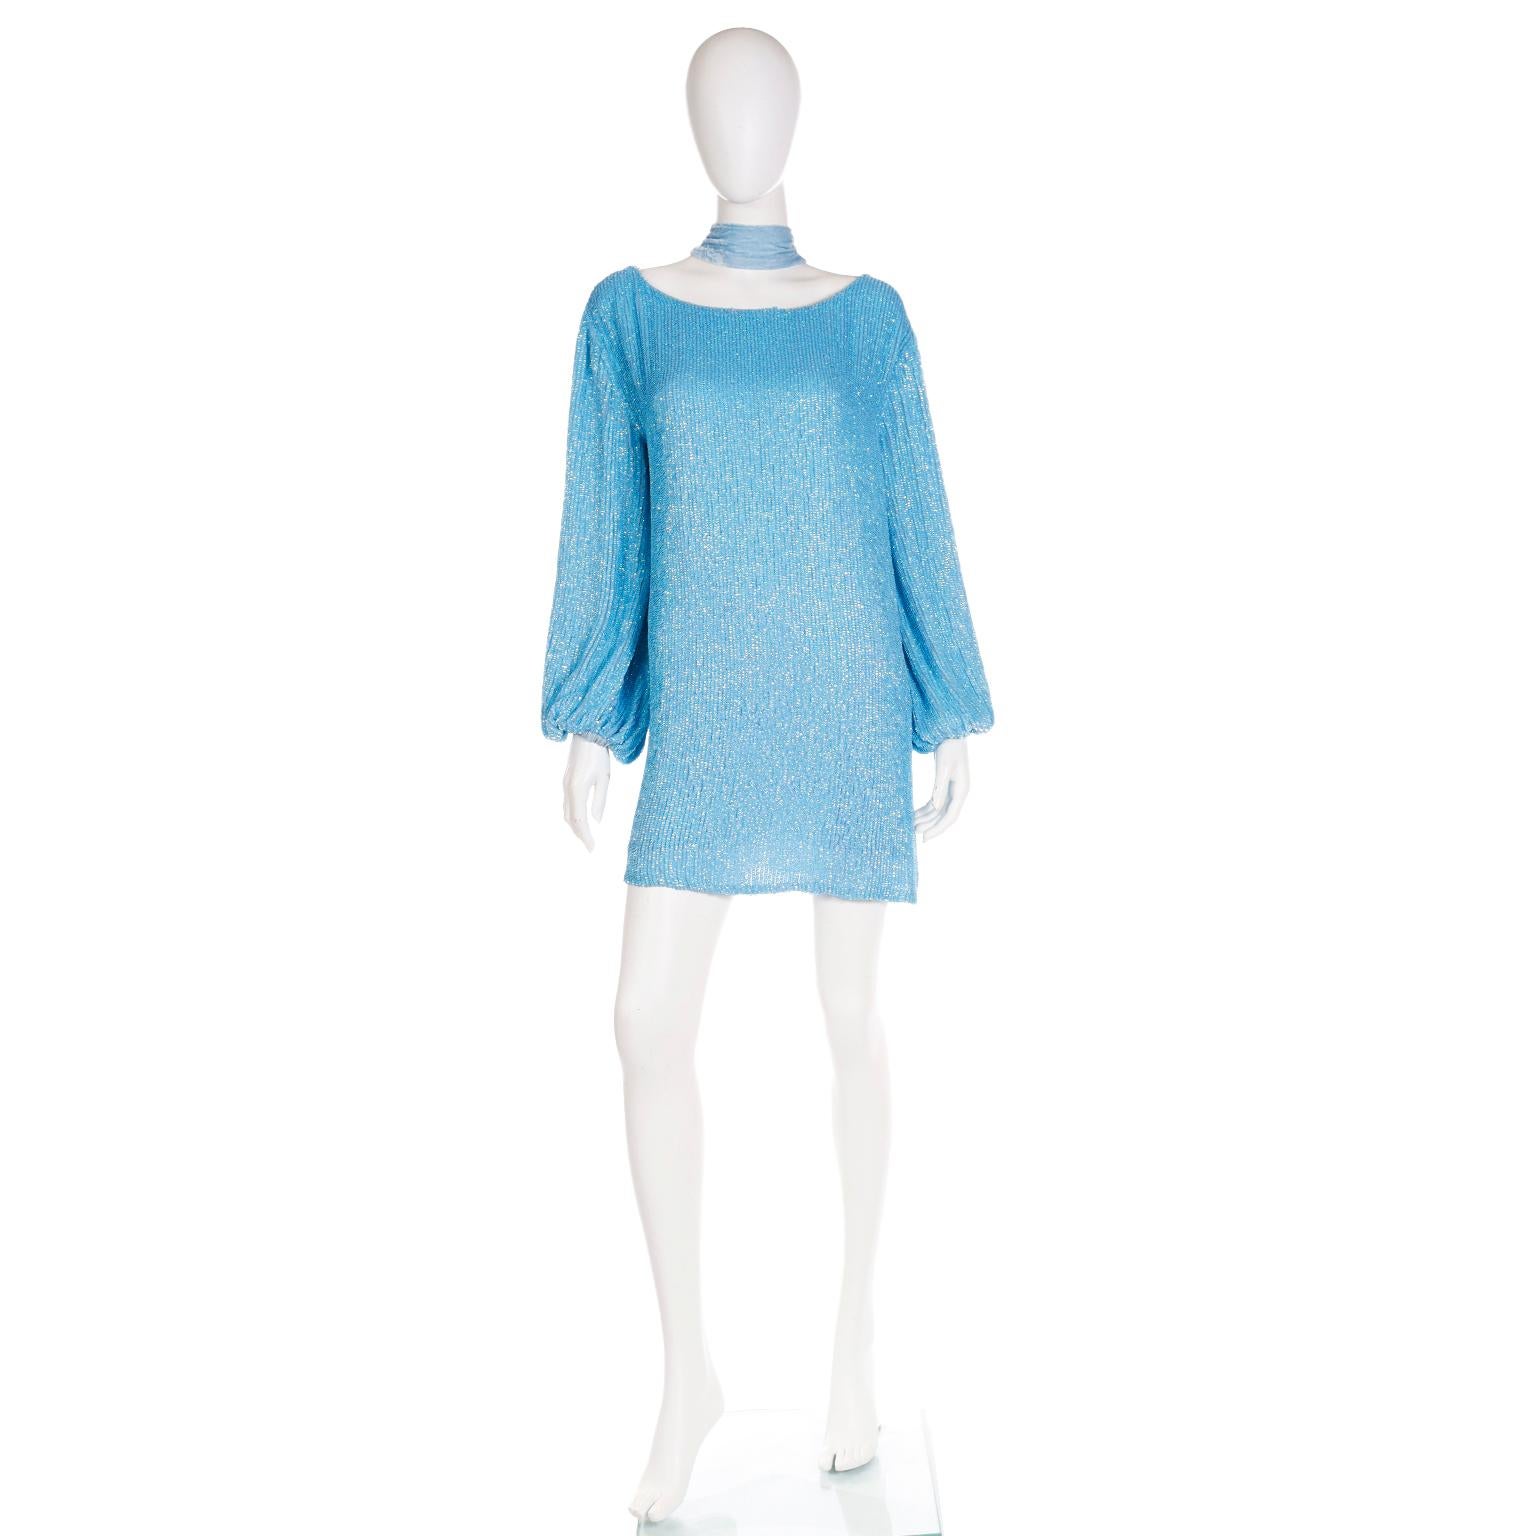 Dies ist eine schöne deadstock Retrofete Pailletten-Minikleid in einem schönen Farbton von blau mit seinem ursprünglichen Tag noch angebracht.  Dieses witzige Kleid kann locker, mit Gürtel oder als Tunika über einer Hose getragen werden. Der blaue